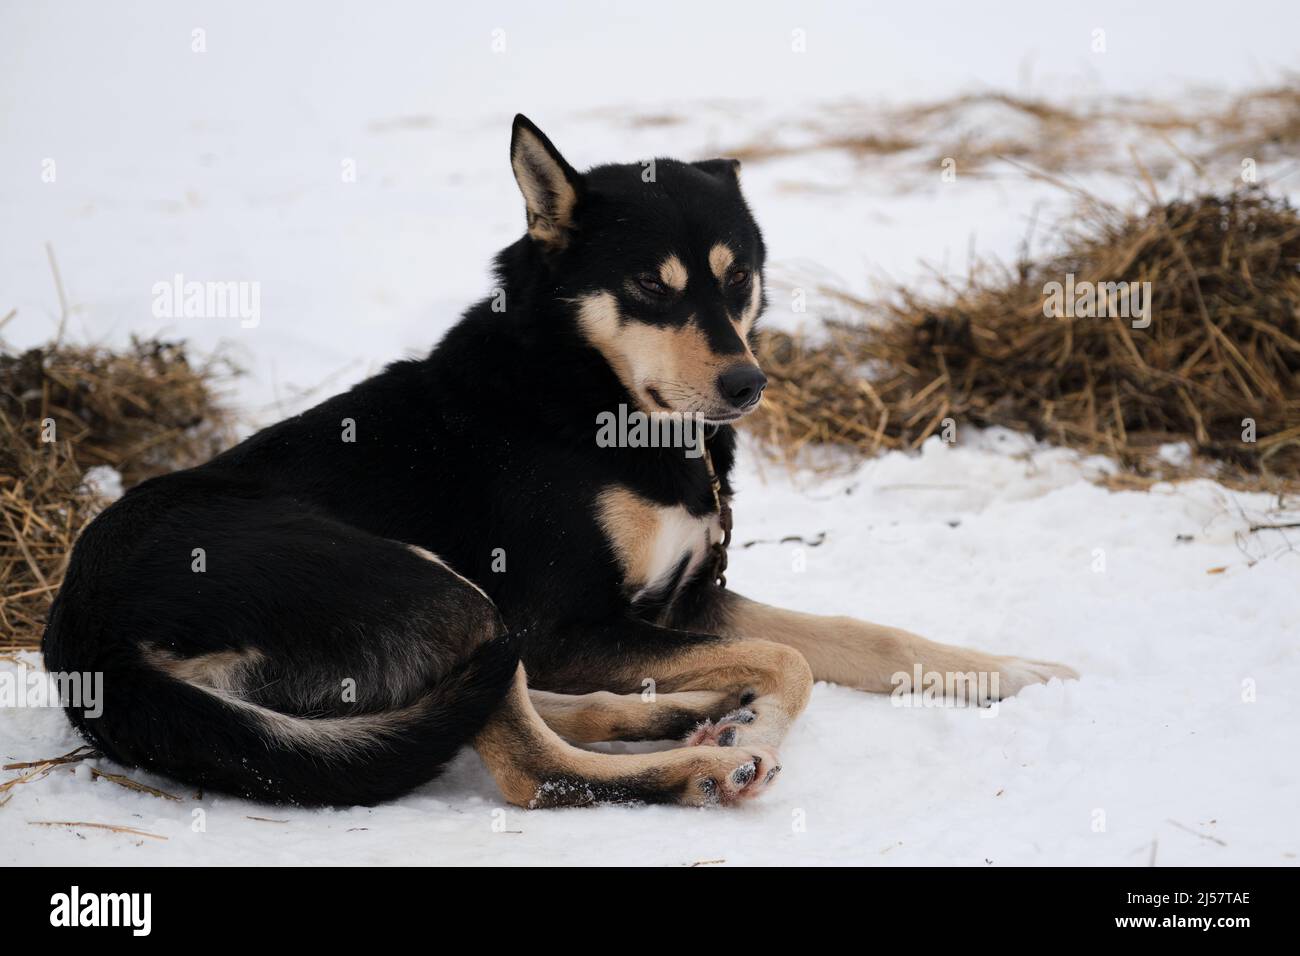 La race de chiens de traîneau du nord est un chien d'Alaska fort énergique et robuste. Le chien noir au brun rouge sur son museau et ses pattes se trouve dans la neige en hiver et se prépare Banque D'Images